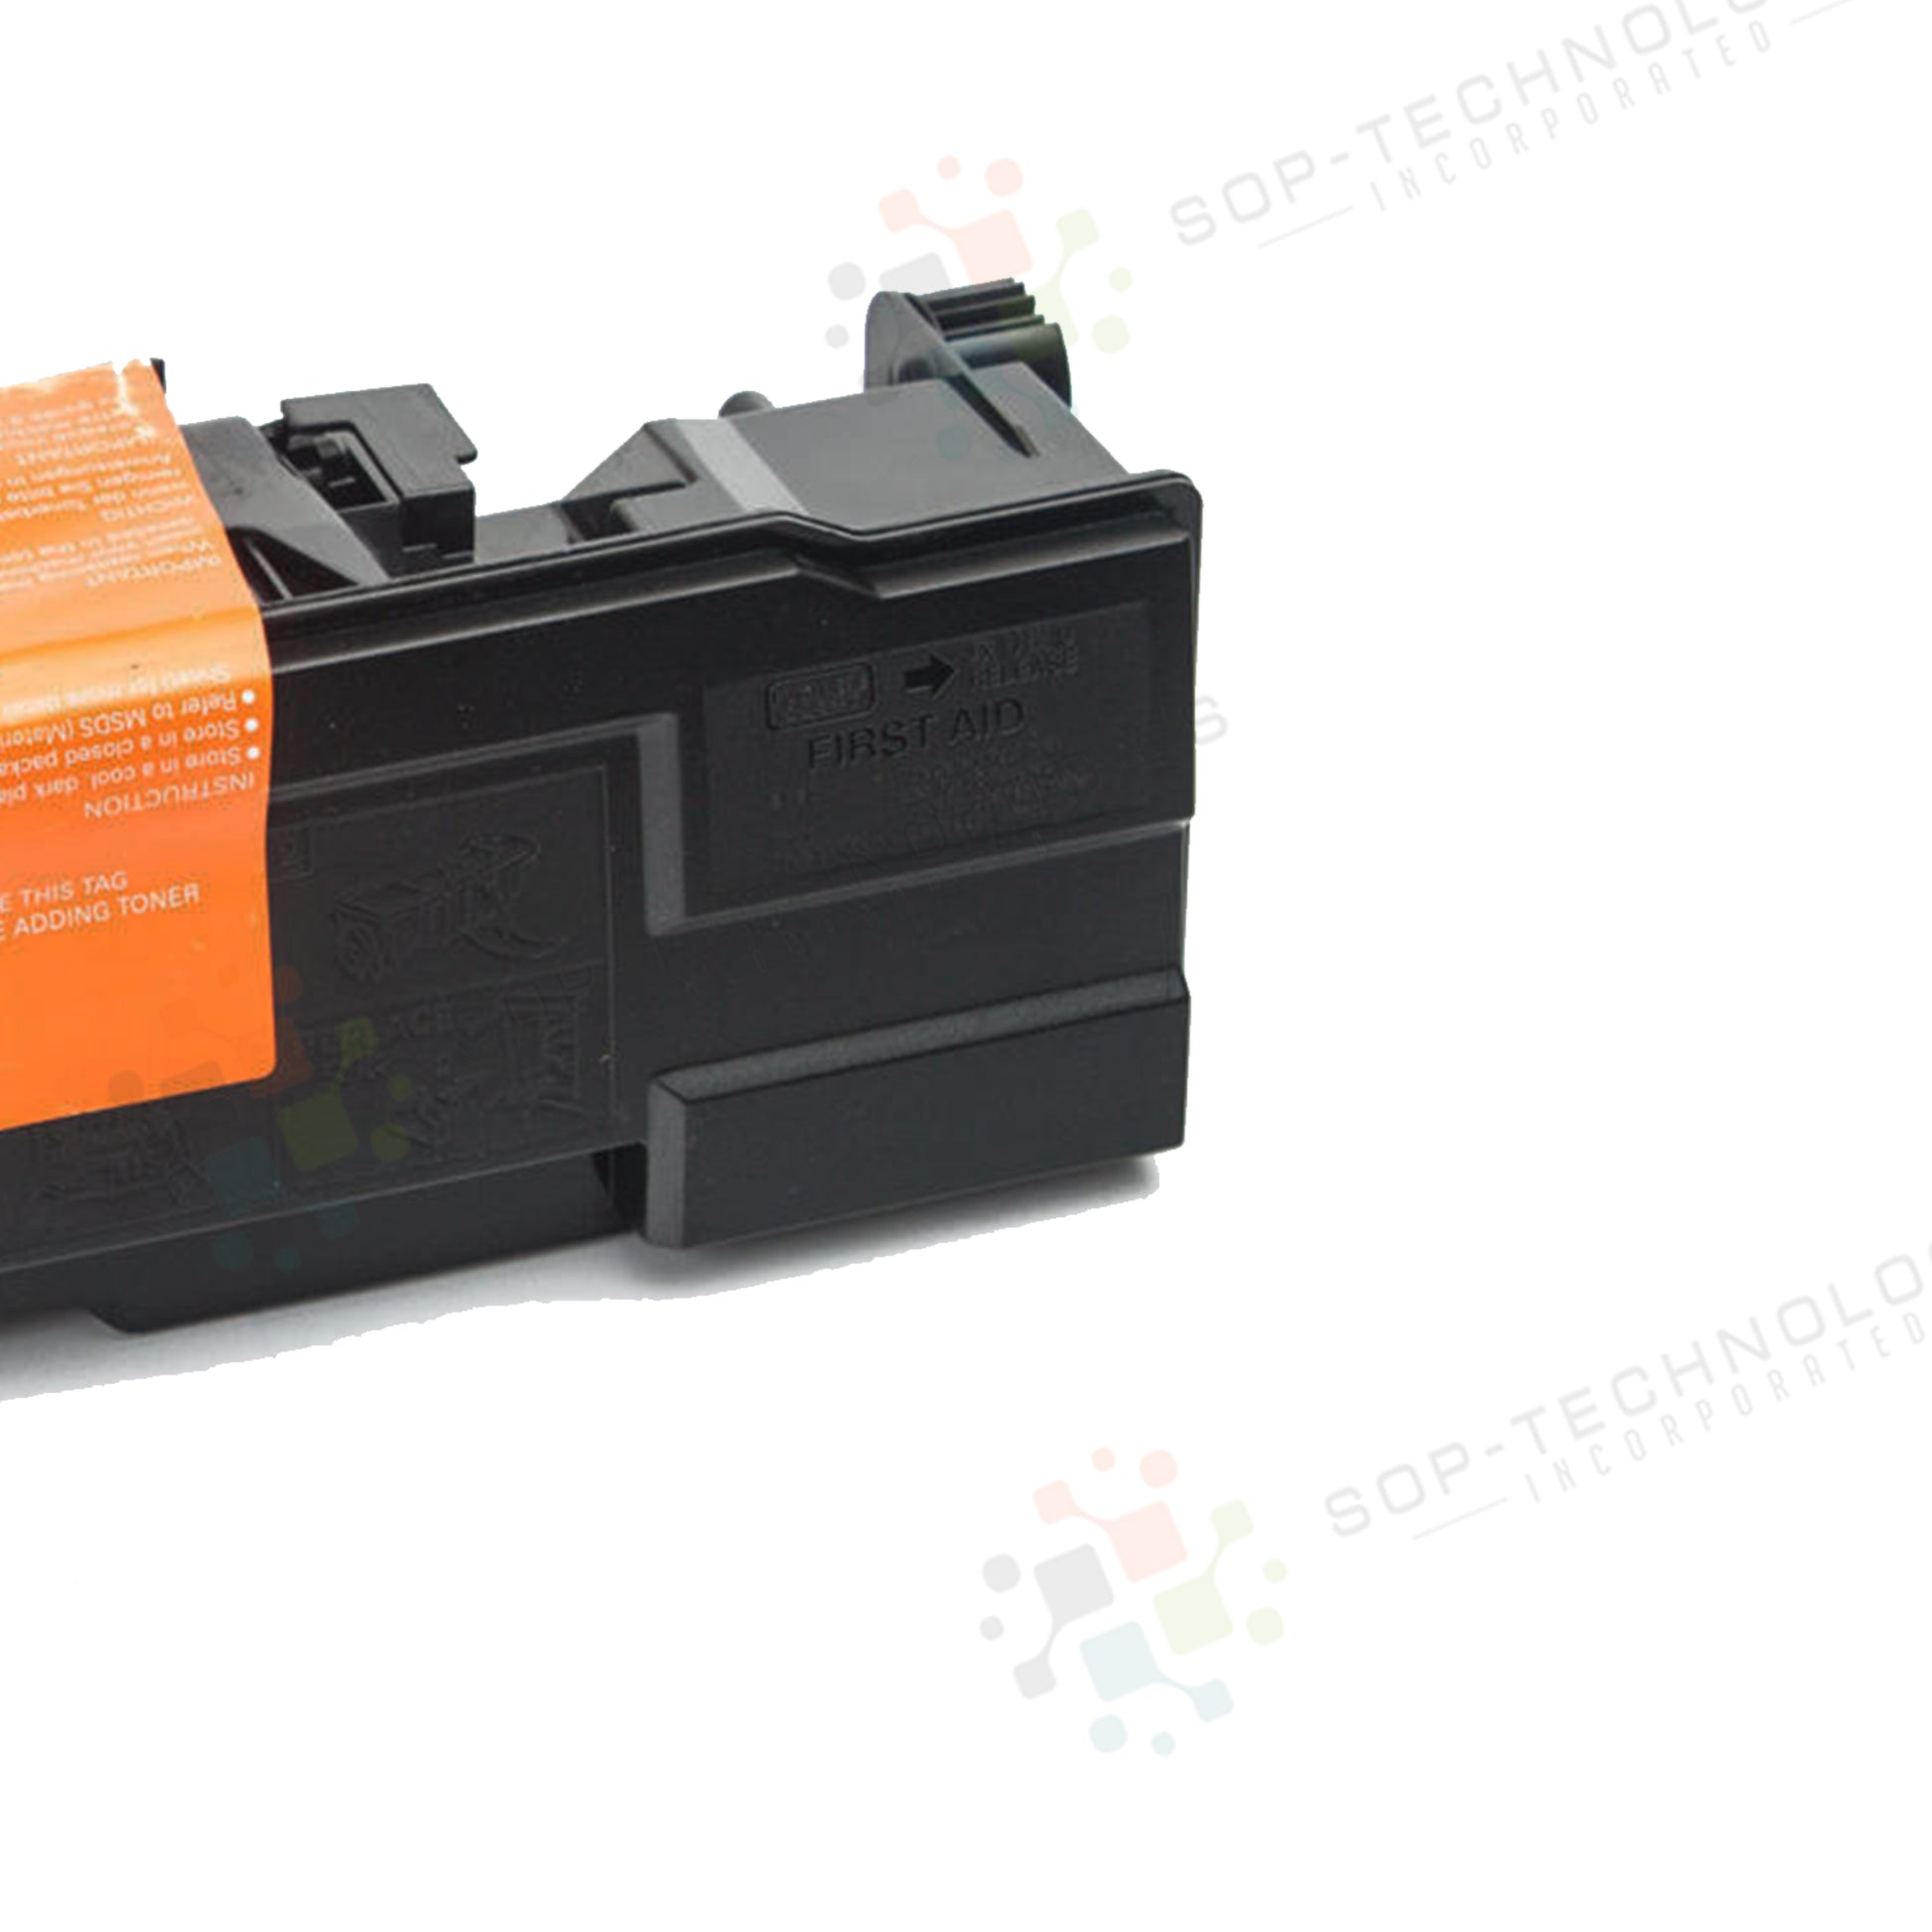 Pack Toner Kit for Kyocera FS-3820 - SOP-TECHNOLOGIES, INC.